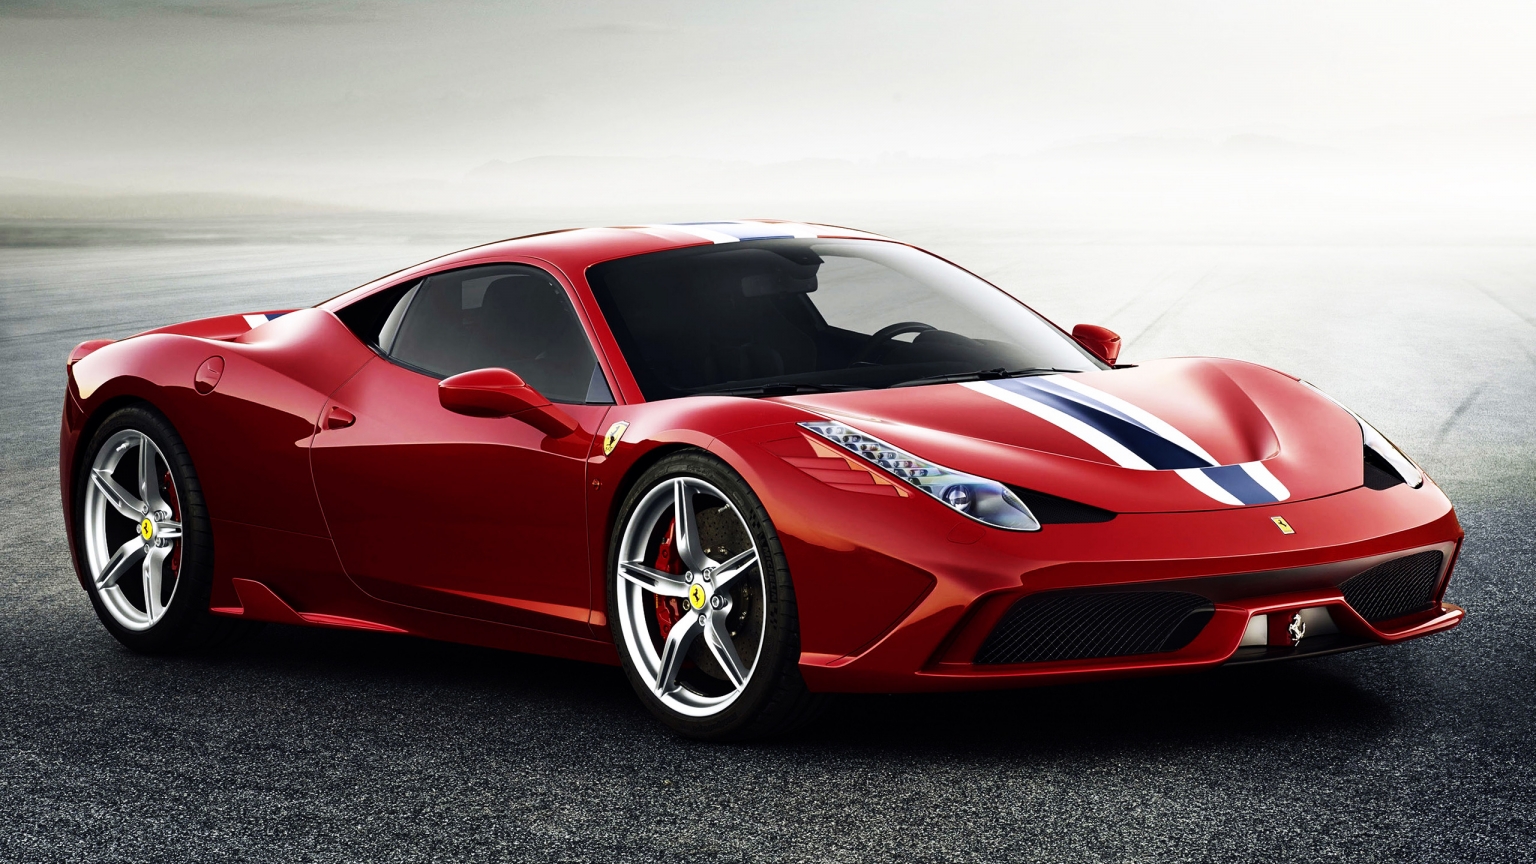 Ferrari 458 Speciale for 1536 x 864 HDTV resolution